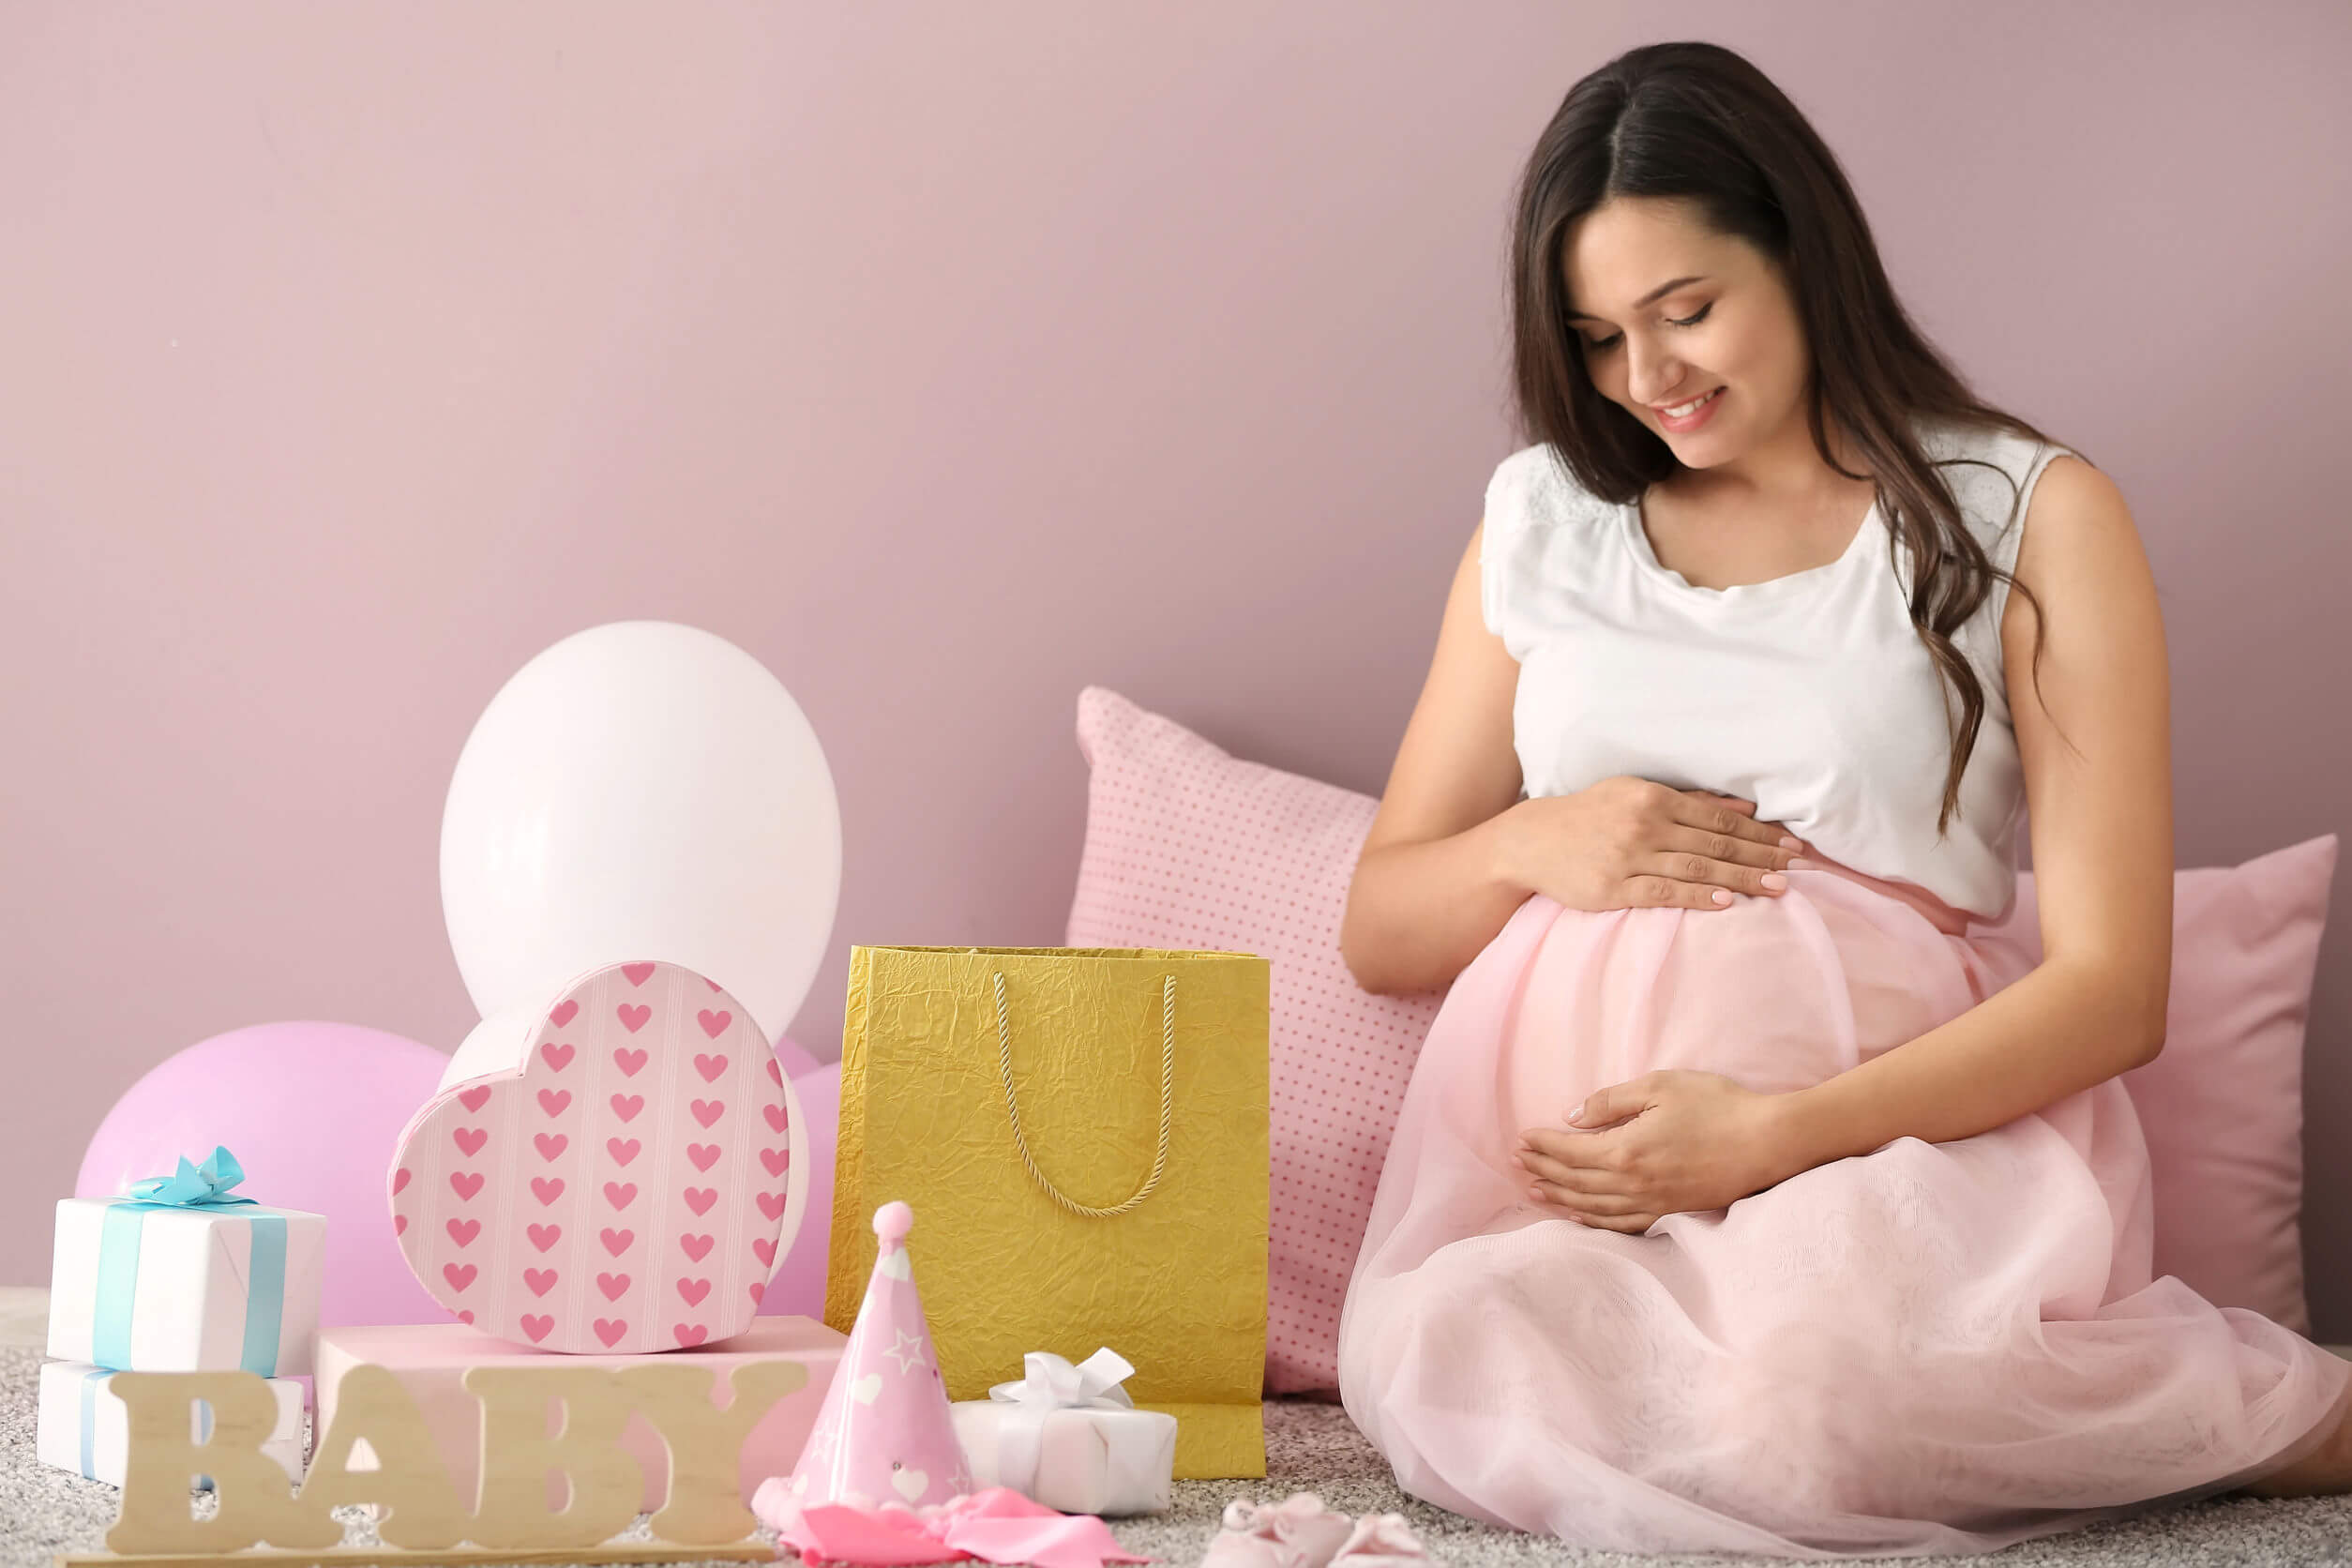 Femme enceinte pensant aux noms de fille pour son bébé.